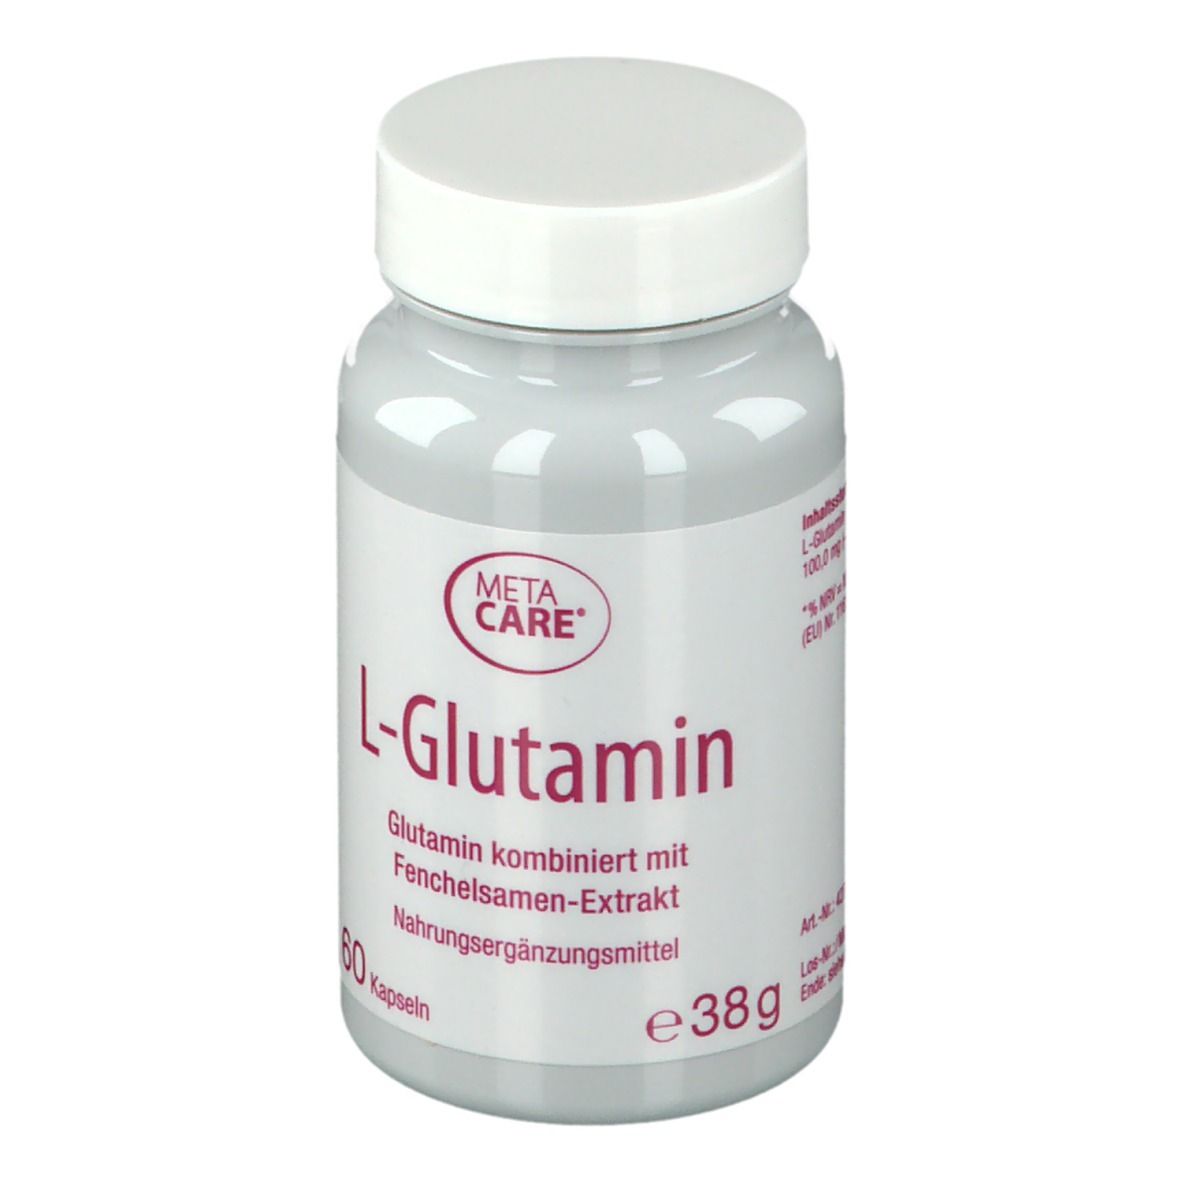 metacare® L-Glutamin